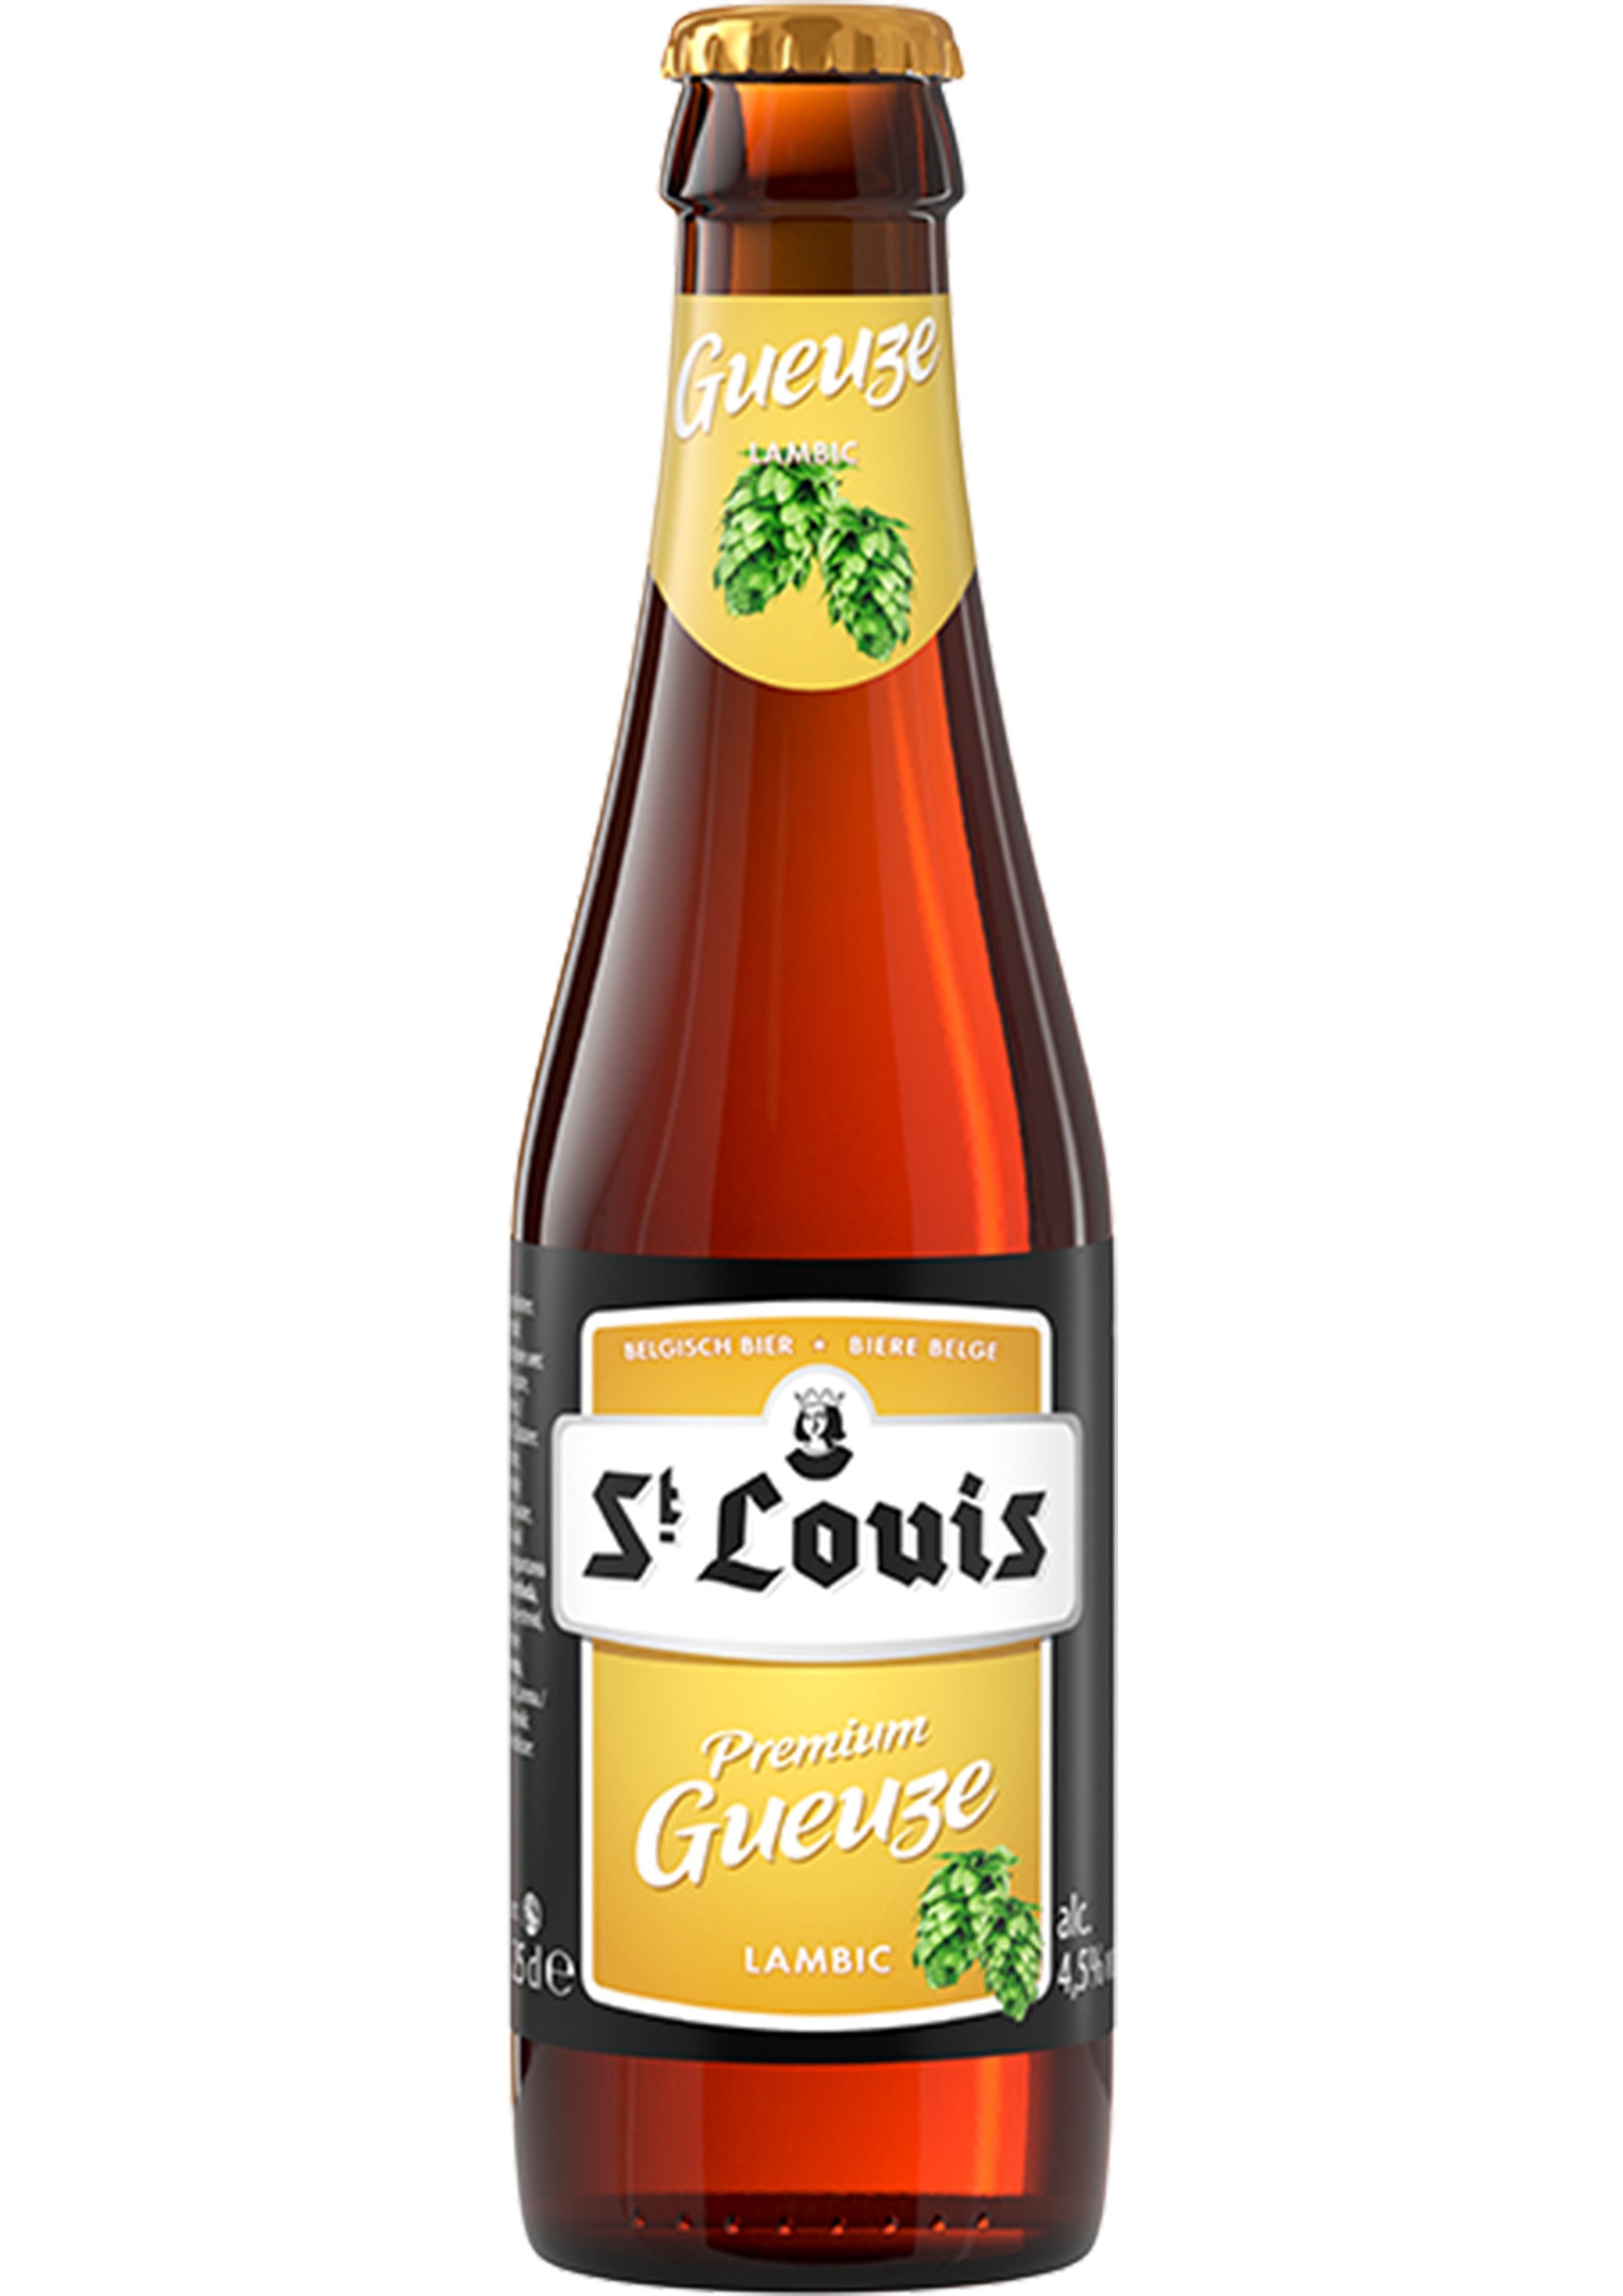 St. Louis Premium Gueuze 0,25l  - belgisches Rohweizenbier mit 4,5% Vol.